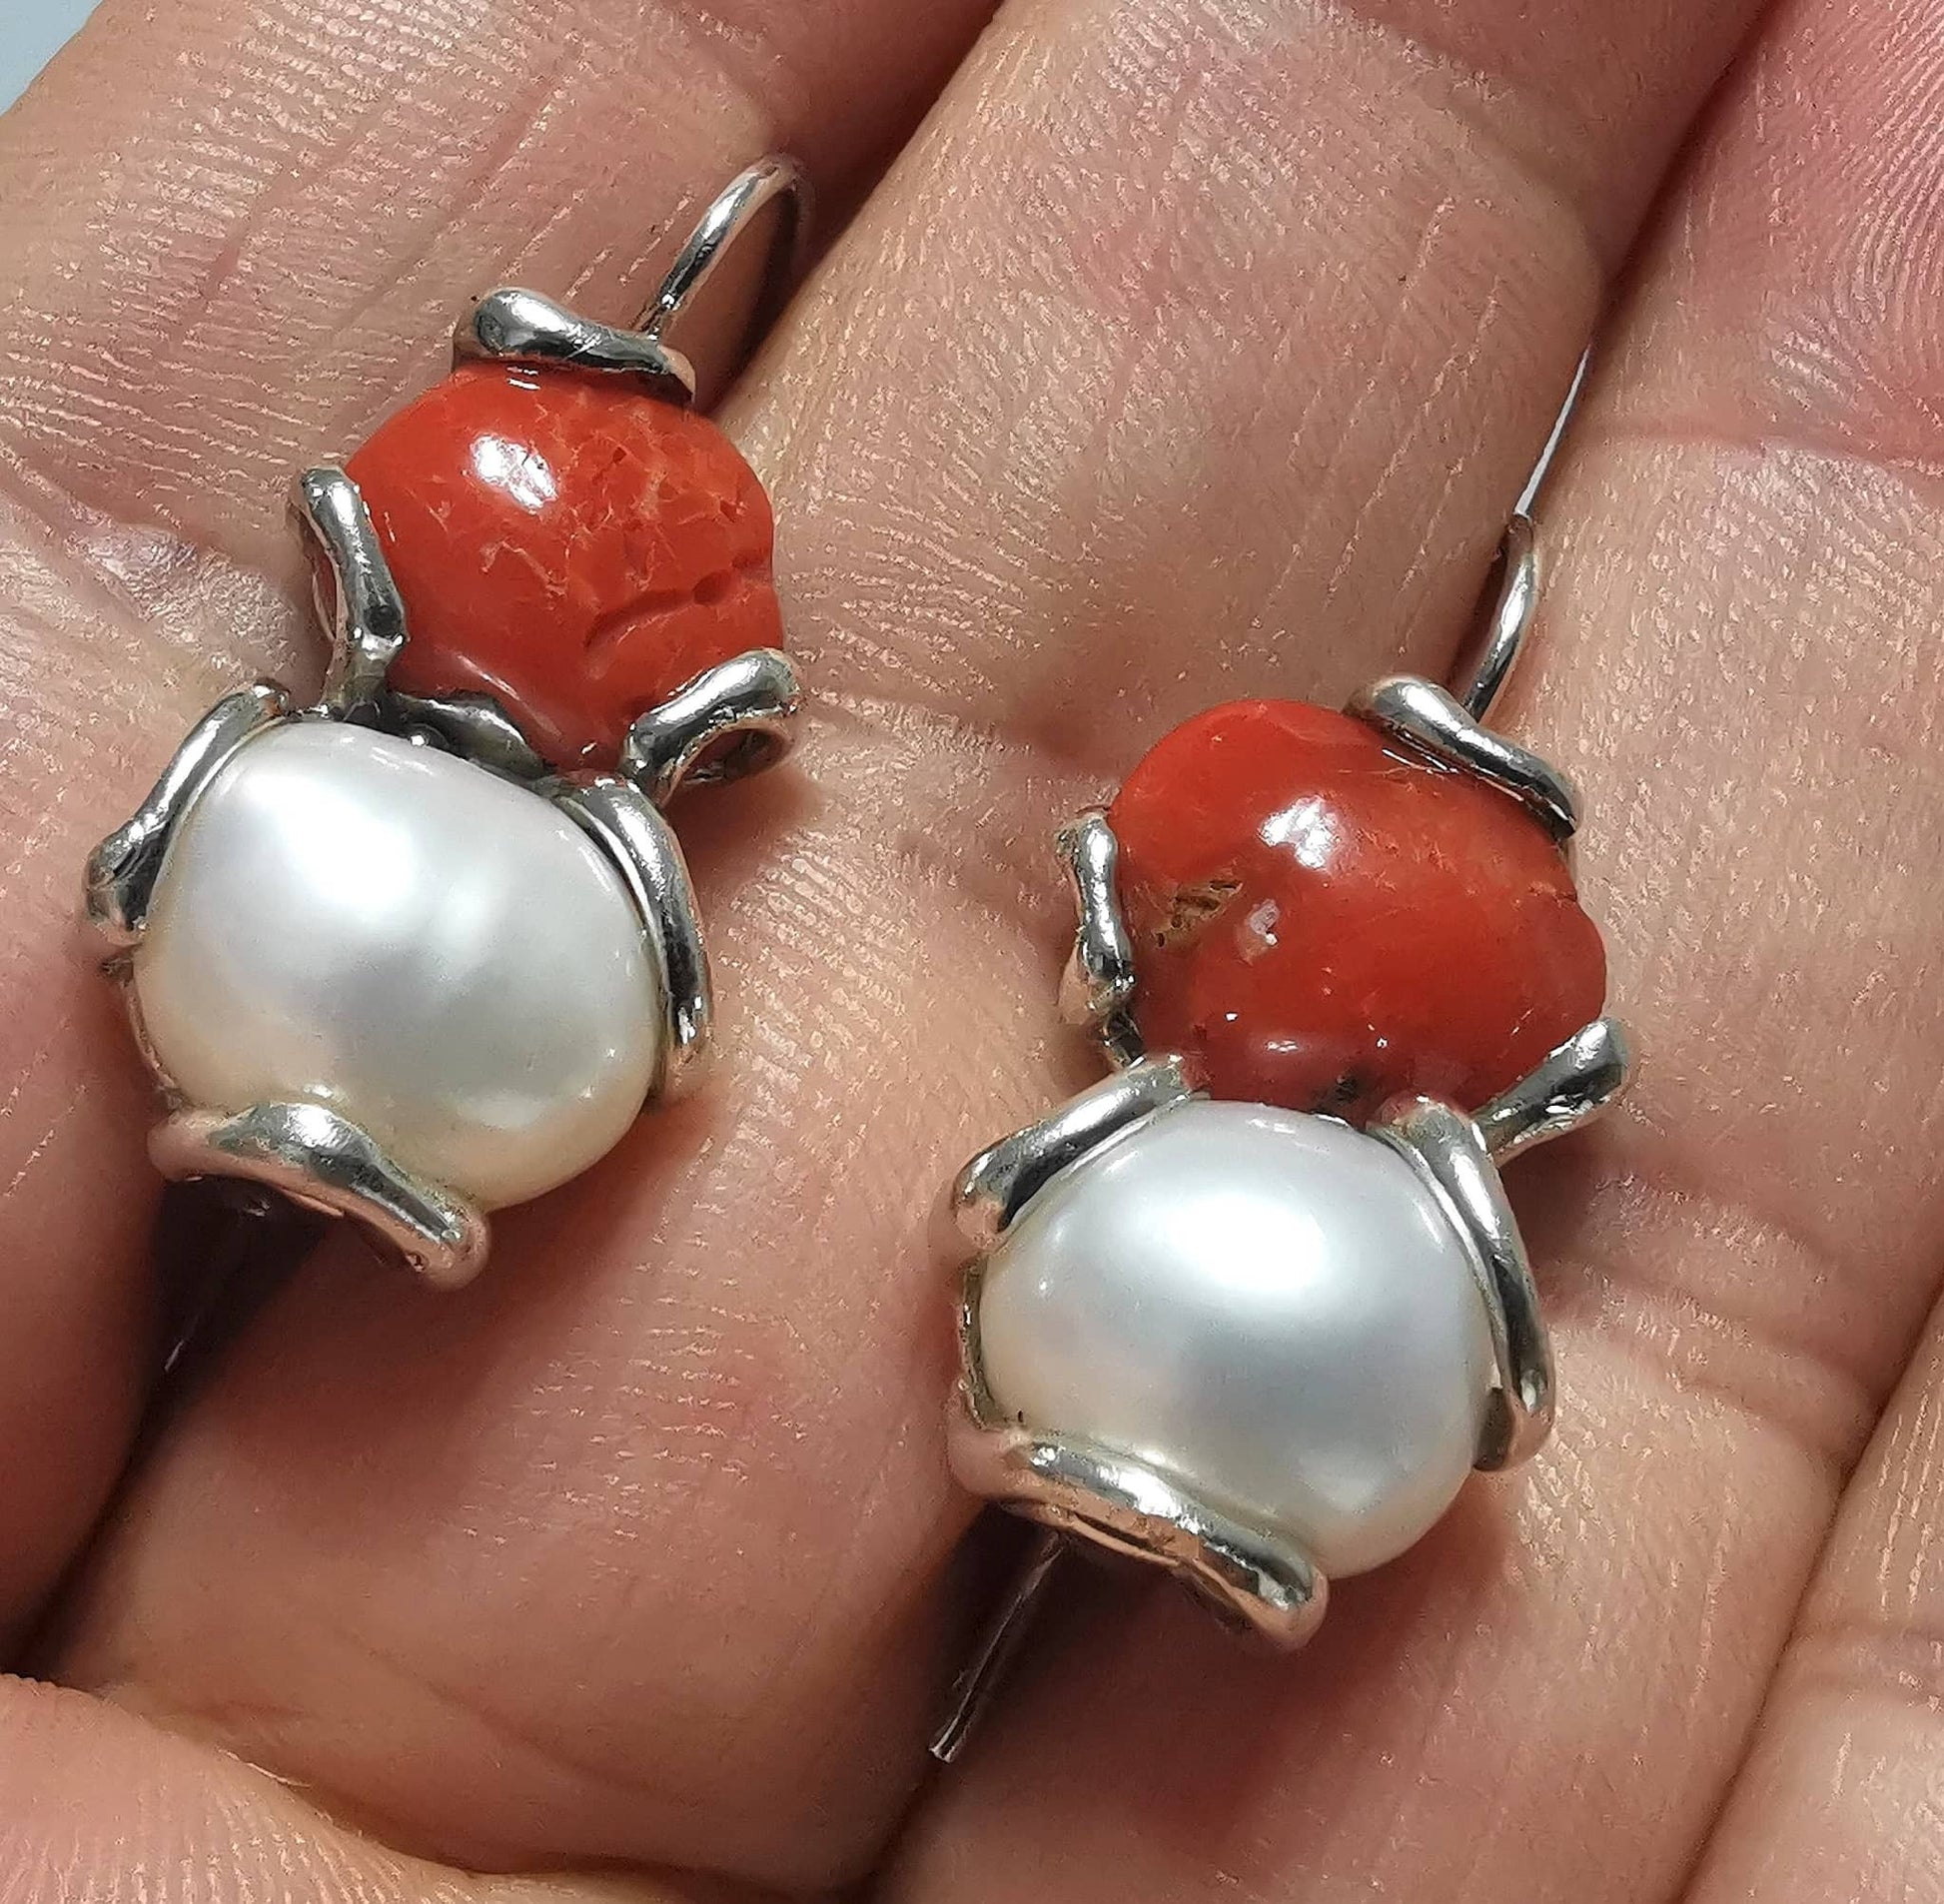 Orecchini Perle barocche e Corallo rosso in argento 925 lavorati con sistema di fusione a cera persa e rifiniti a mano